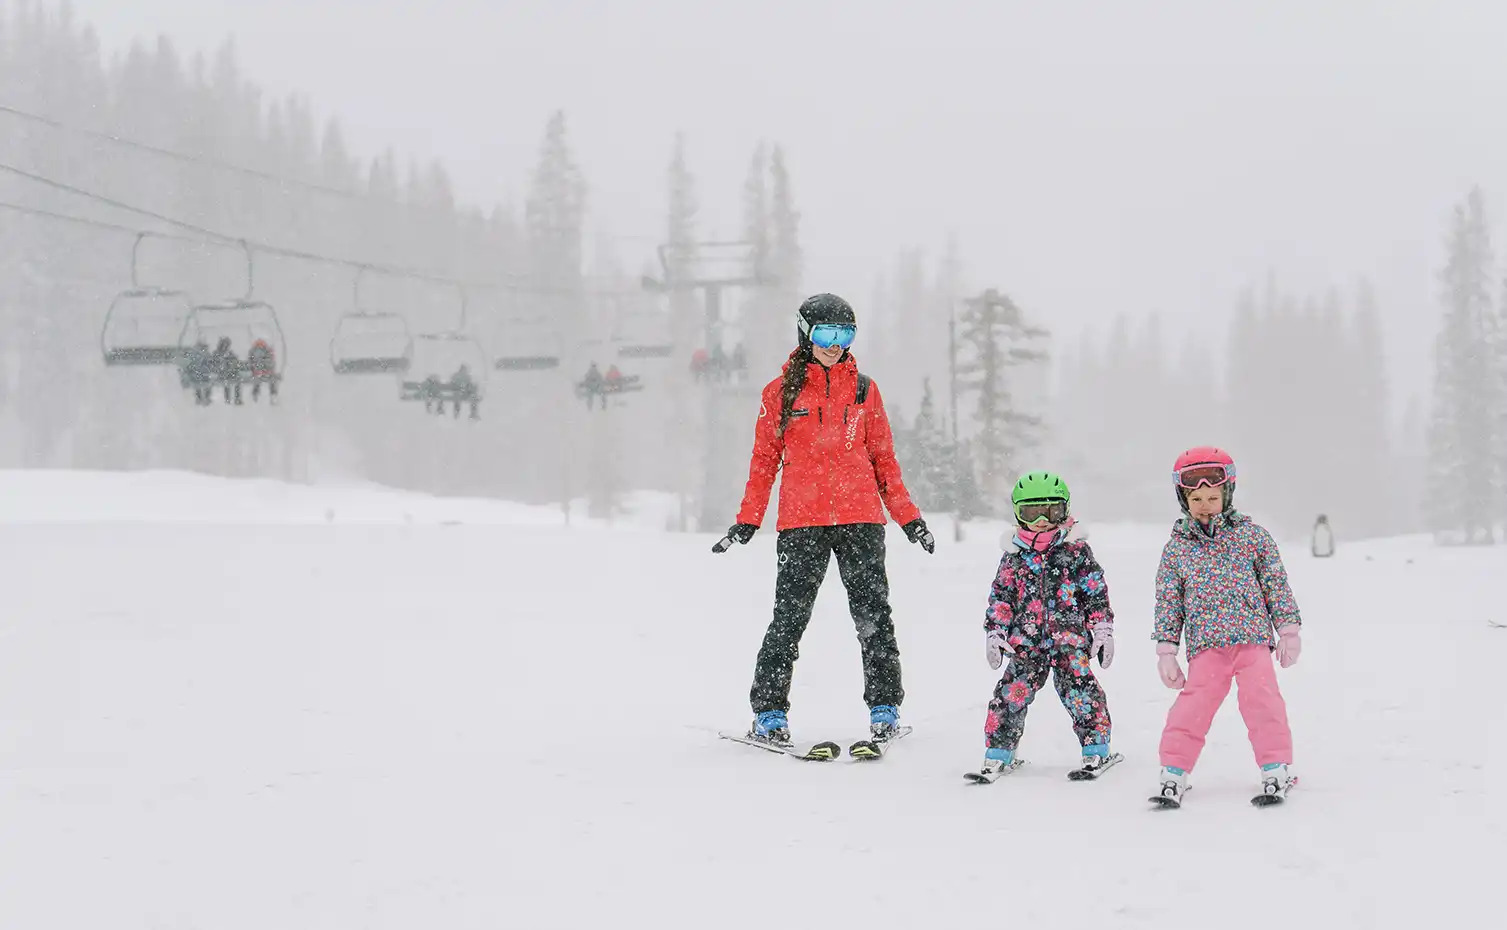 阿斯本儿童和青少年滑雪小组课程